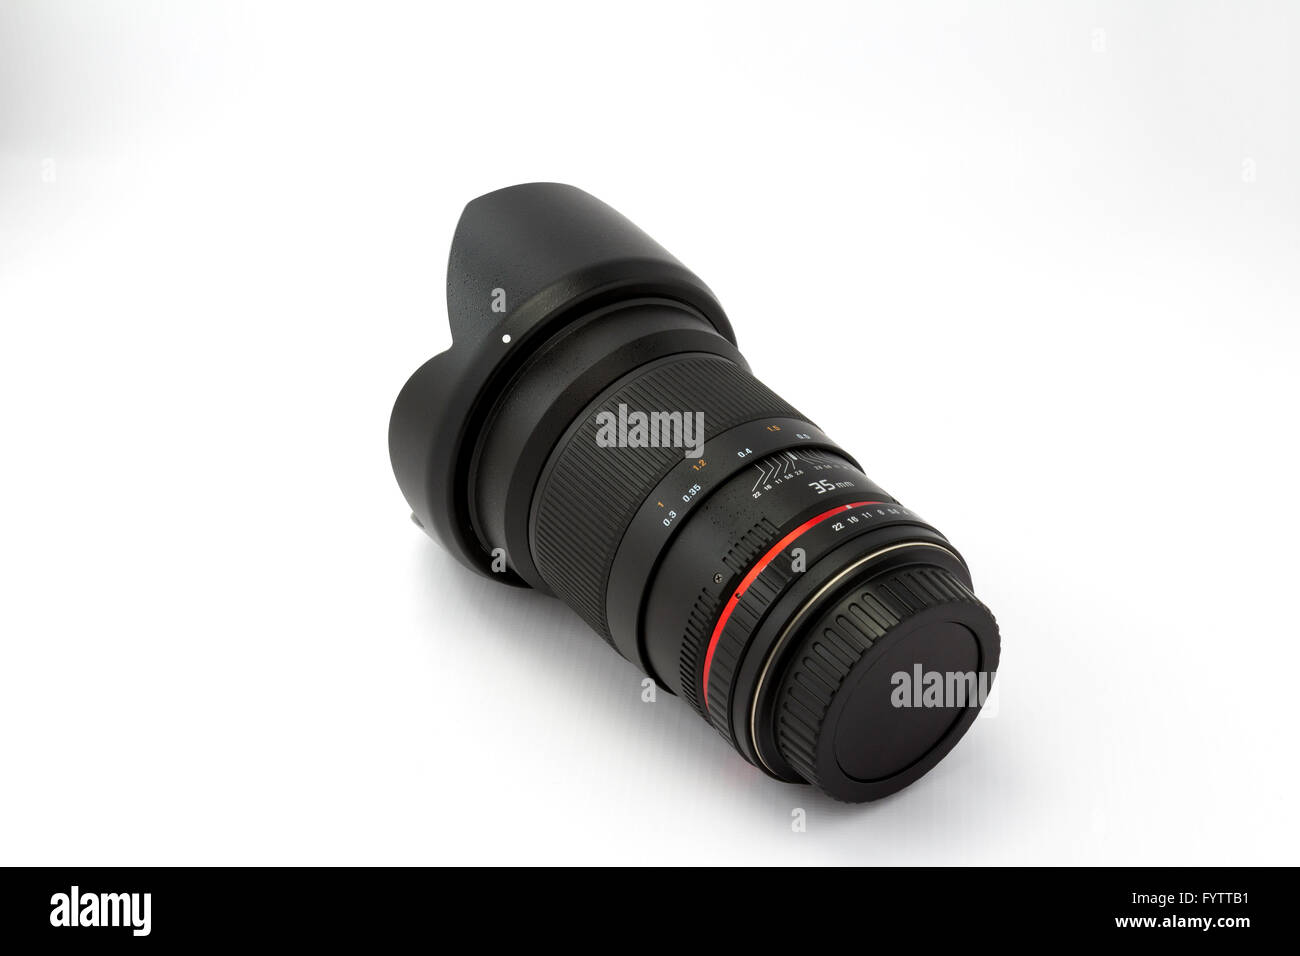 Lens for SLR camera Stock Photo